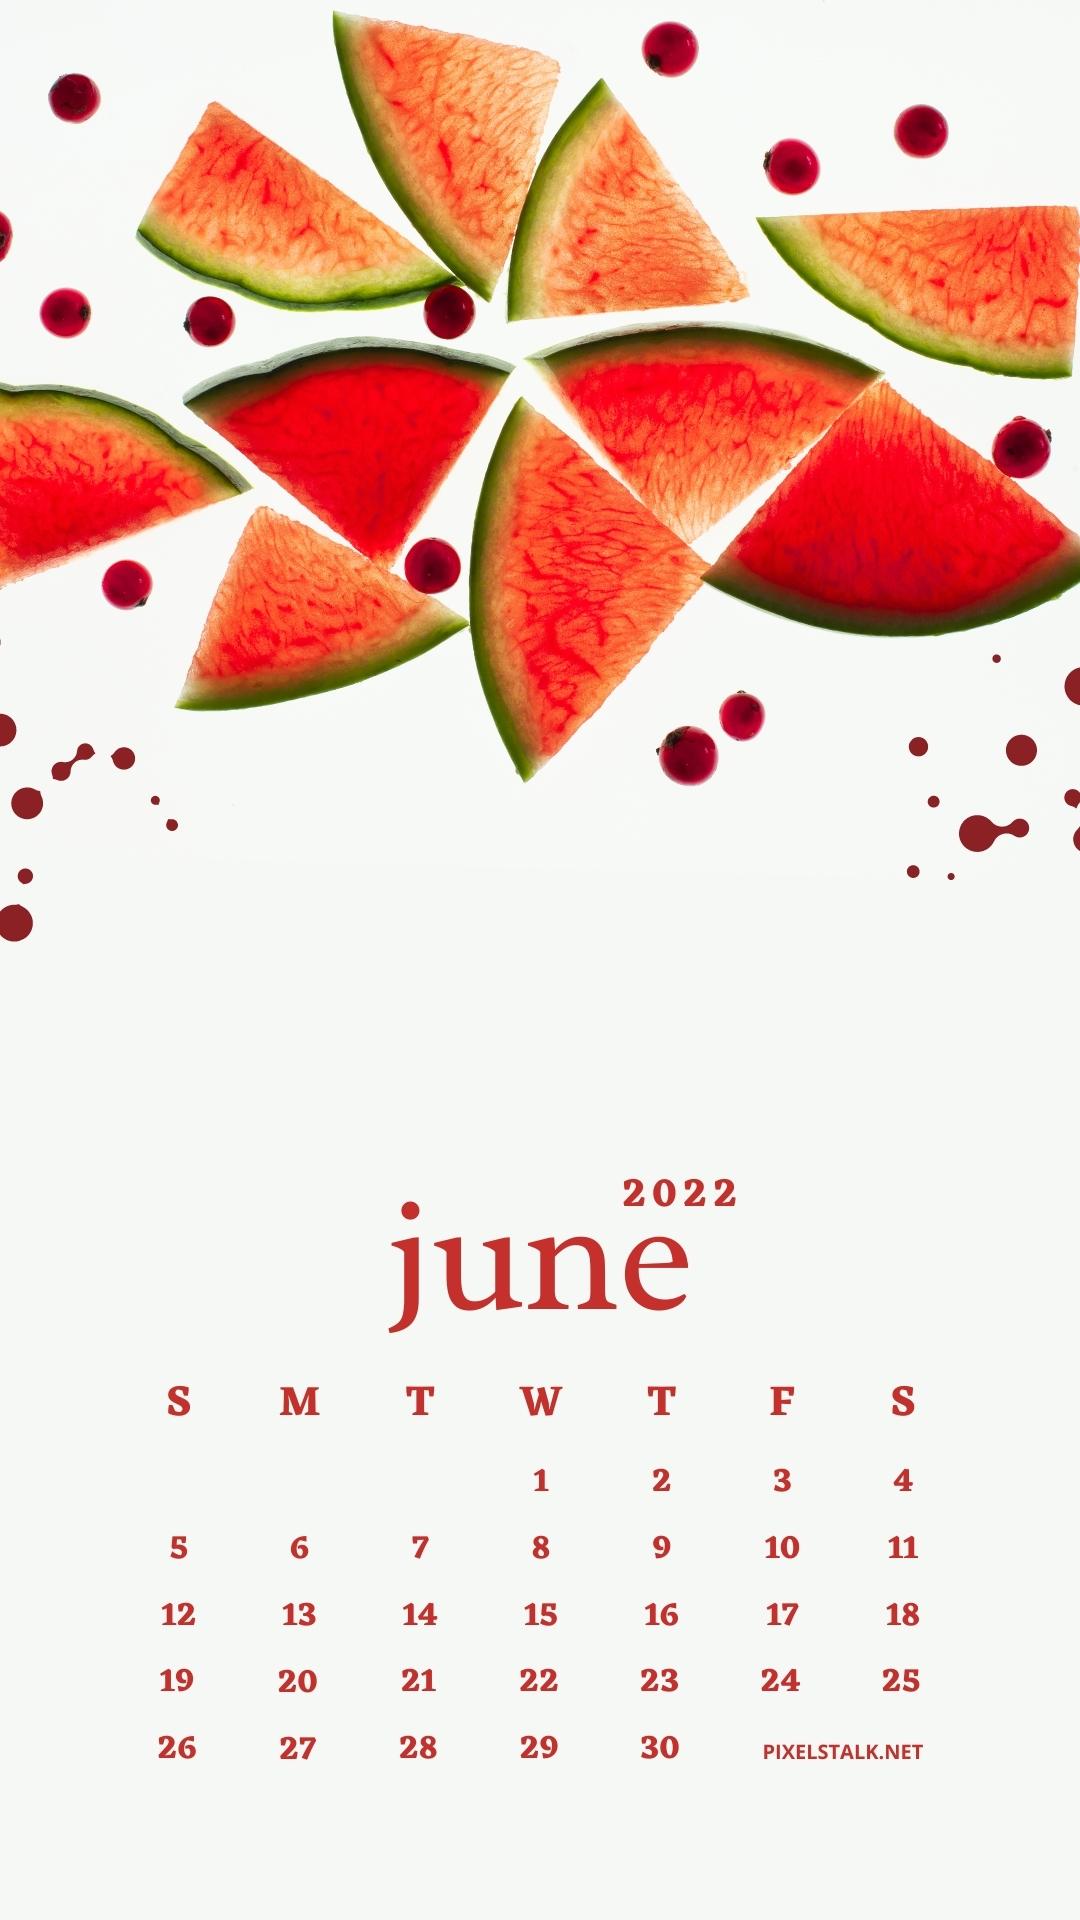 June 2022 Calendar Wallpaper June 2022 Calendar Iphone Wallpapers Hd - Pixelstalk.net